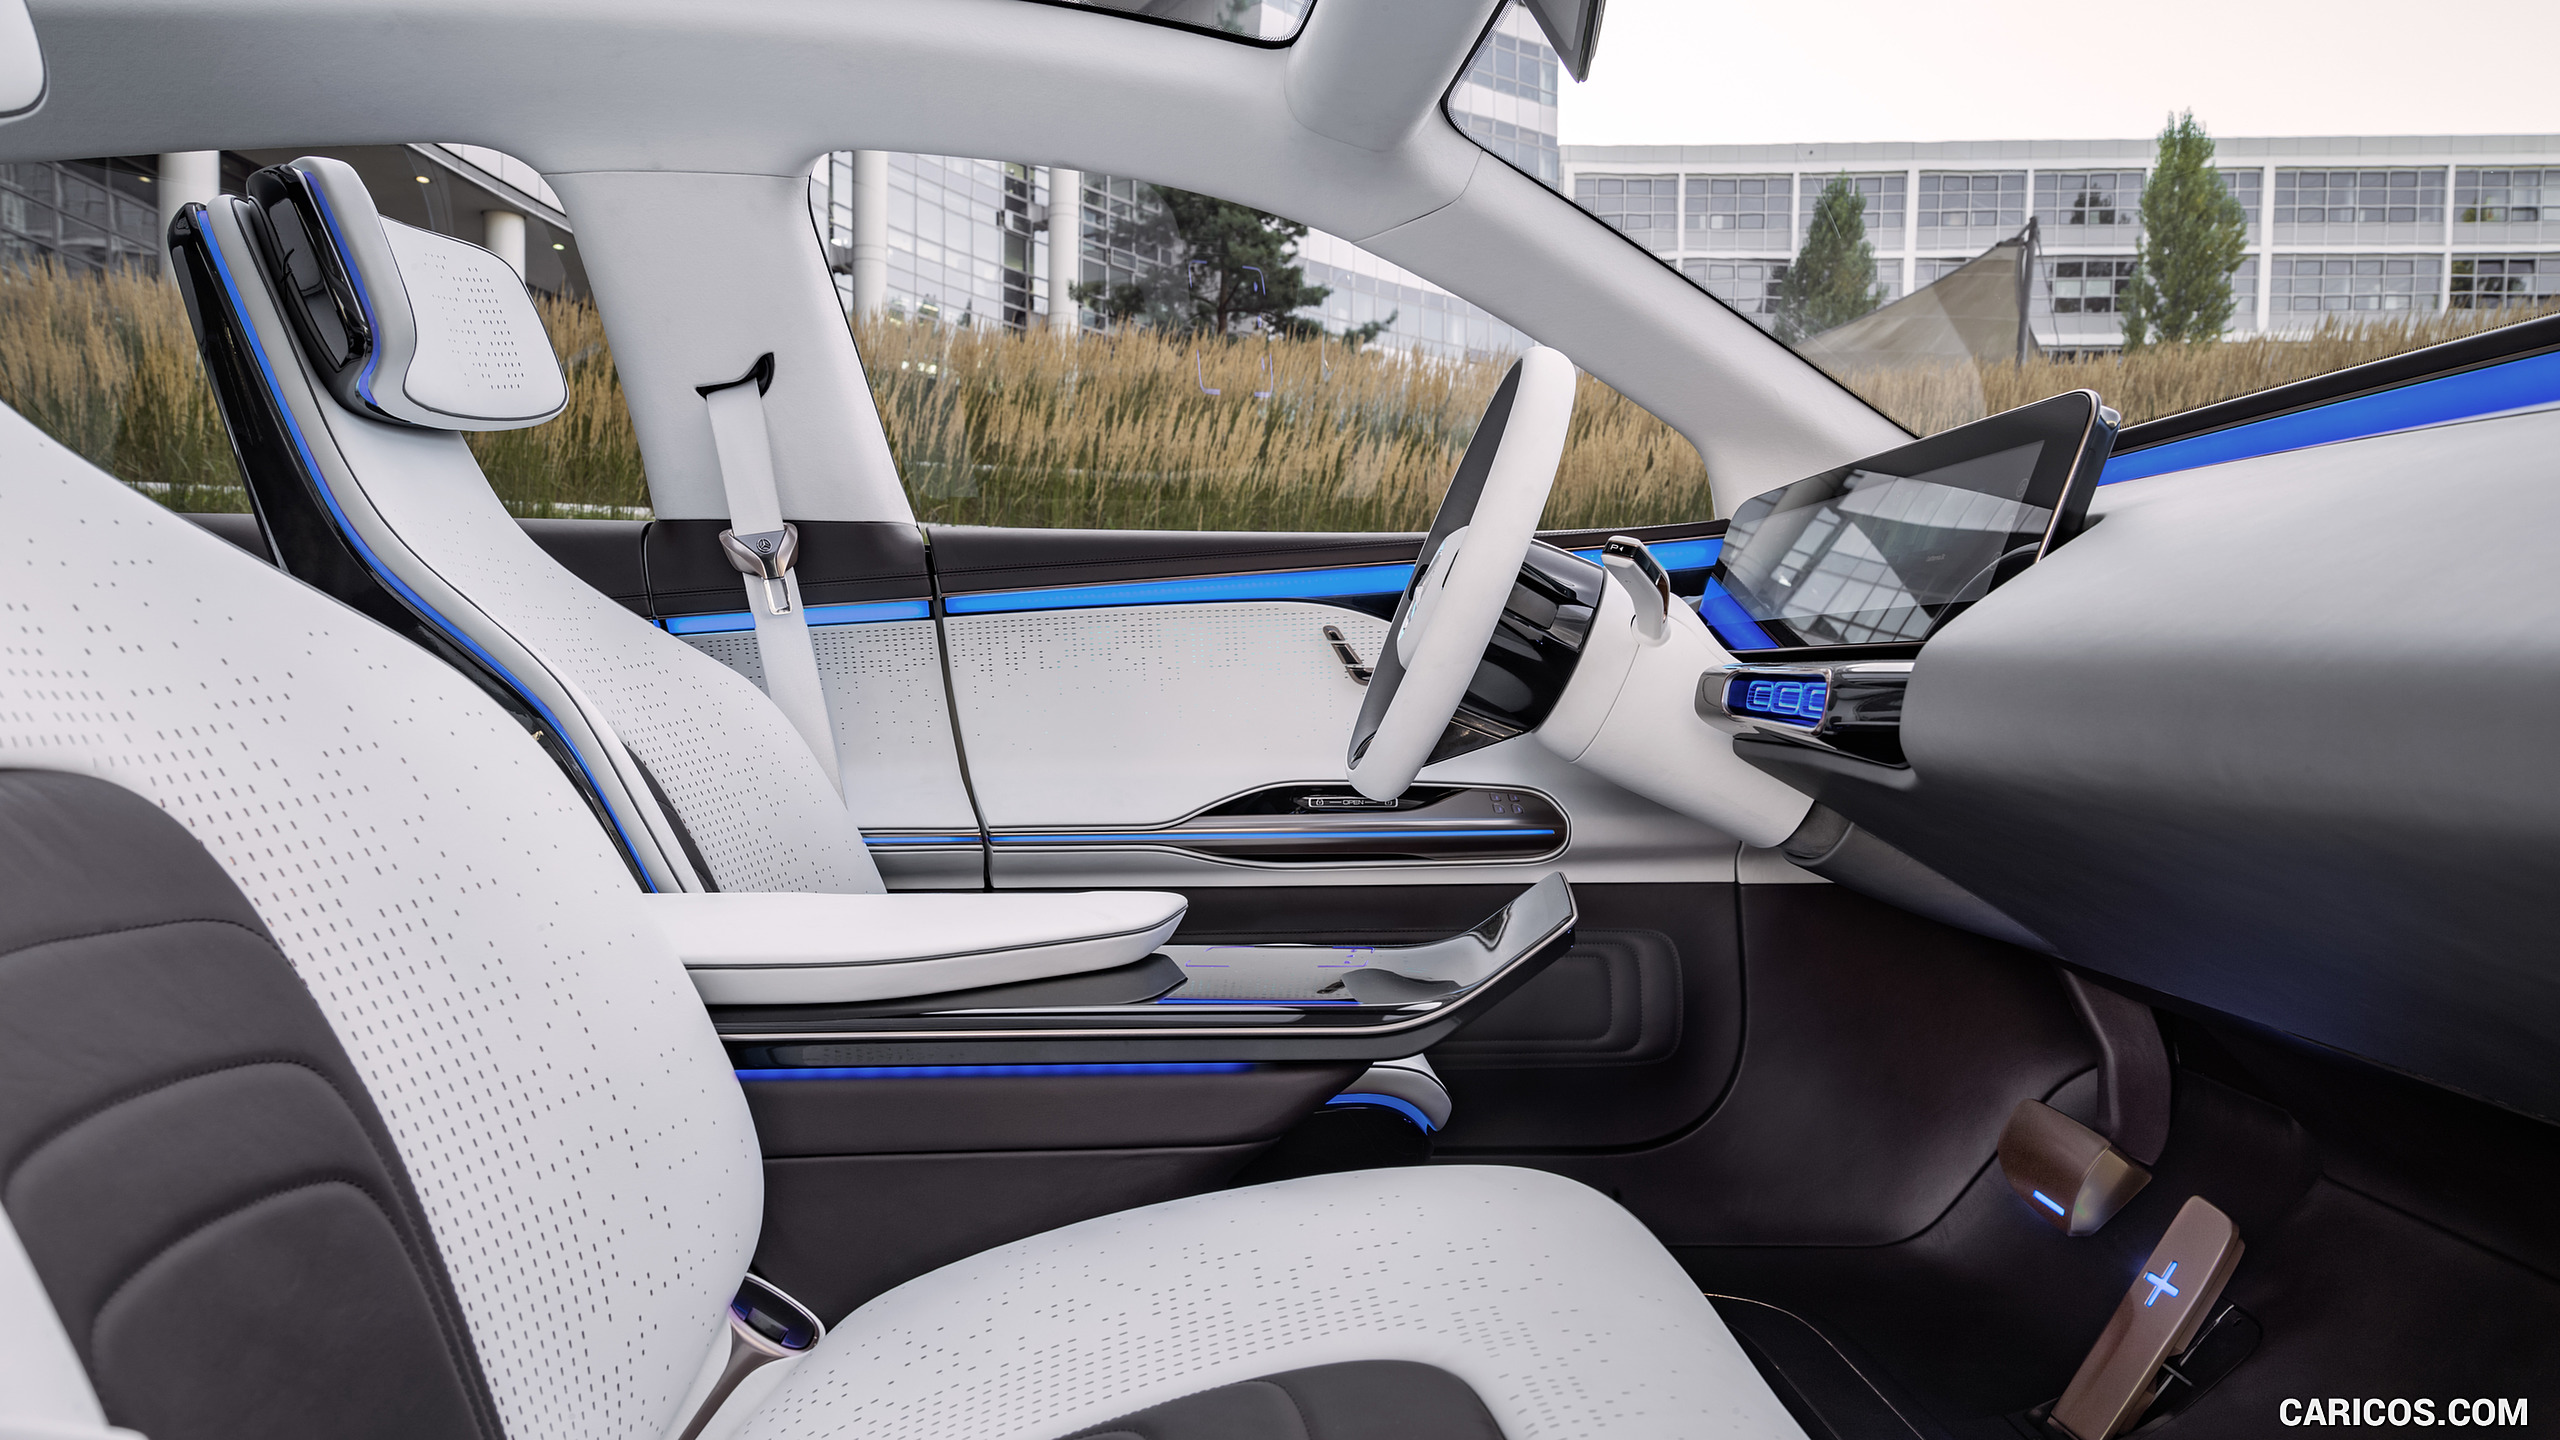 2016 Mercedes-Benz Generation EQ SUV Concept - Interior, Front Seats, #20 of 50